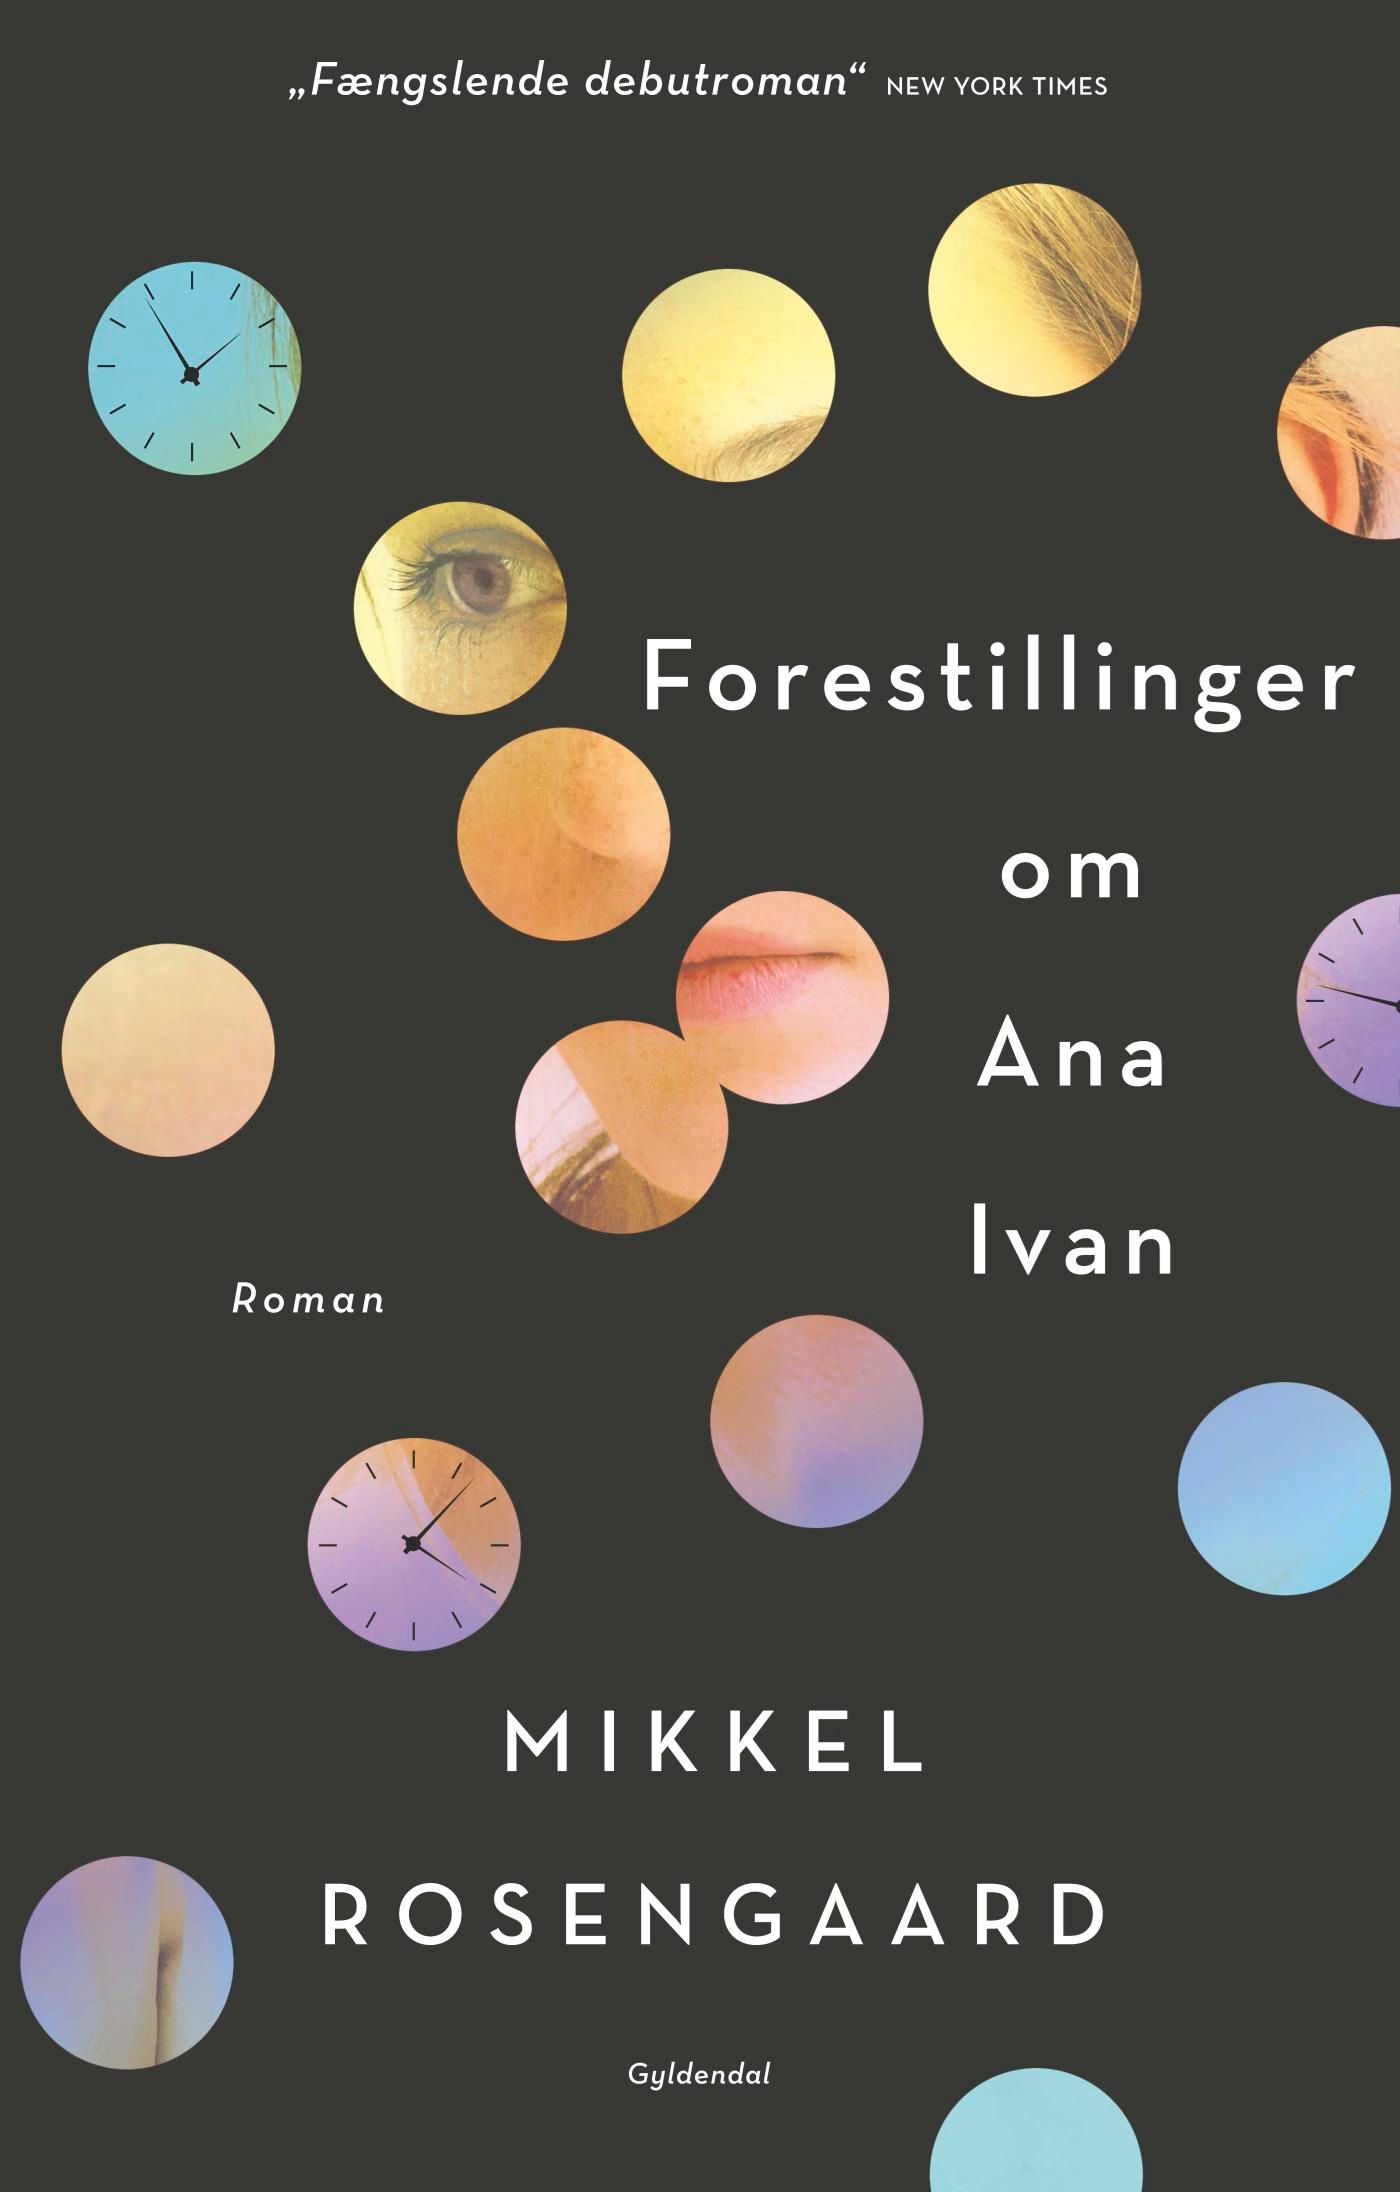 Forestillinger om Ana Ivan, e-bok av Mikkel Rosengaard